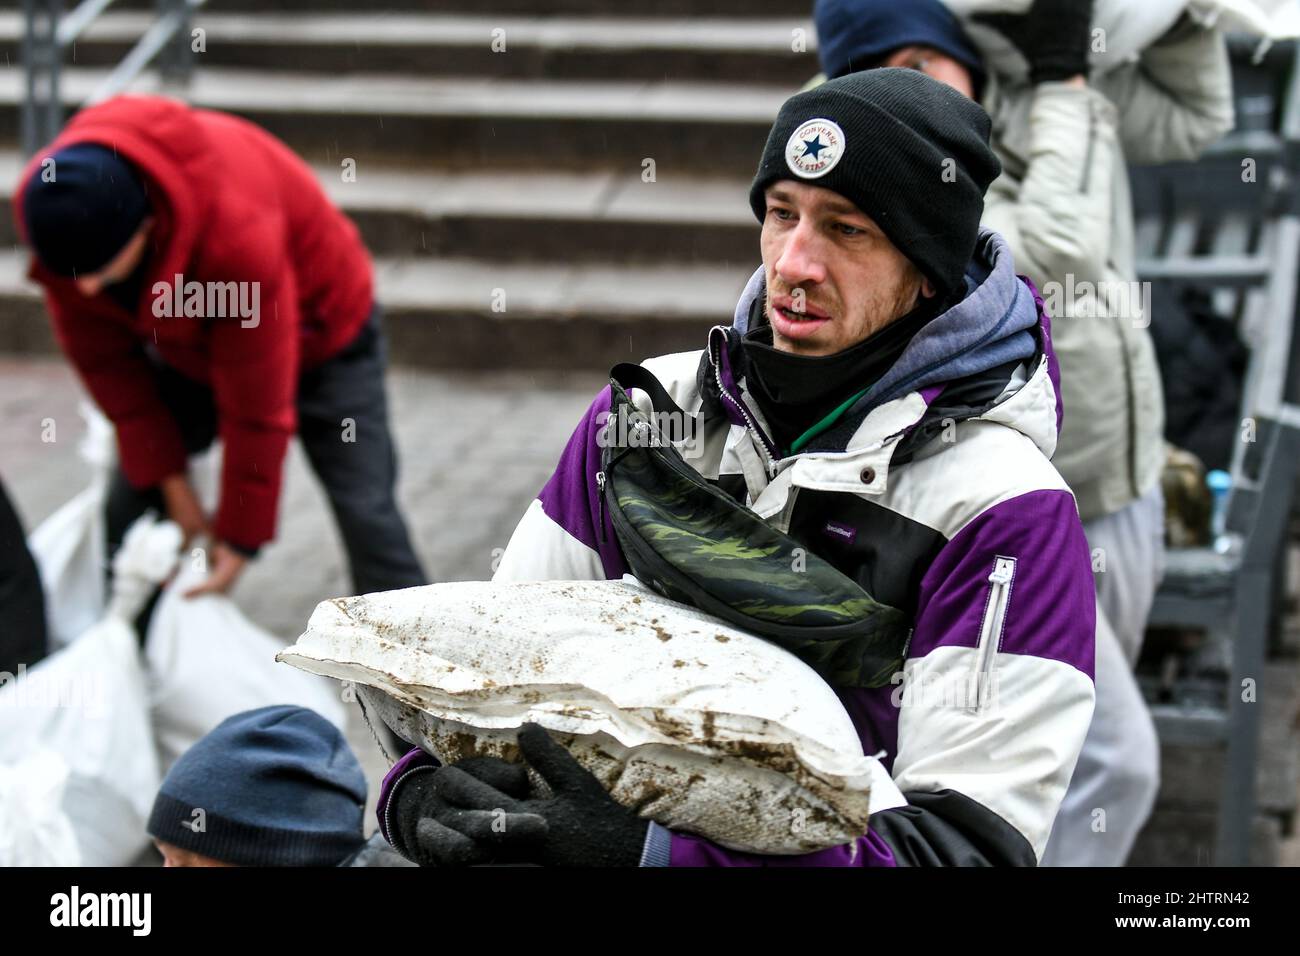 ZAPORIZHZHIA, UCRAINA - 2 MARZO 2022 - Un uomo porta un sacchetto di sabbia per sigillare l'entrata all'ospedale di cura di emergenza poichè l'Ucraina è sotto attacco dalla Russia da giovedì 24 febbraio, Zaporizhzhia, Ucraina sudorientale. Credit: Ukrinform/Alamy Live News Foto Stock